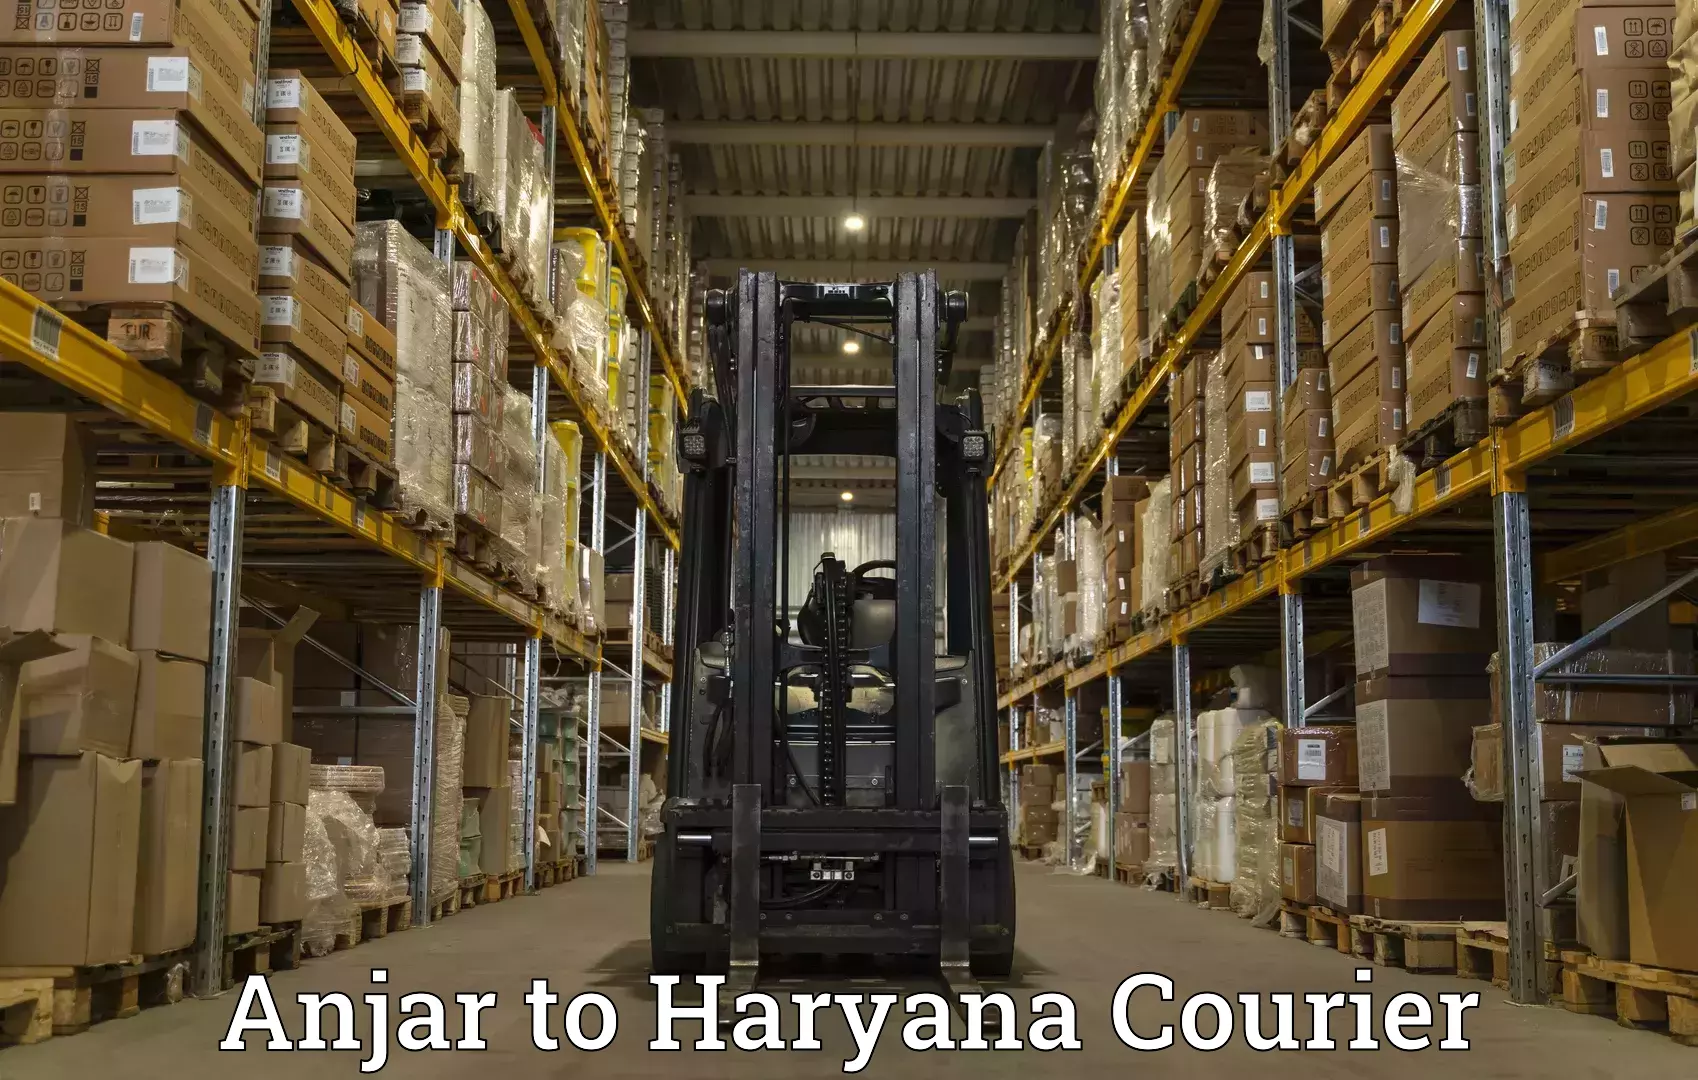 High-capacity shipping options Anjar to Hansi